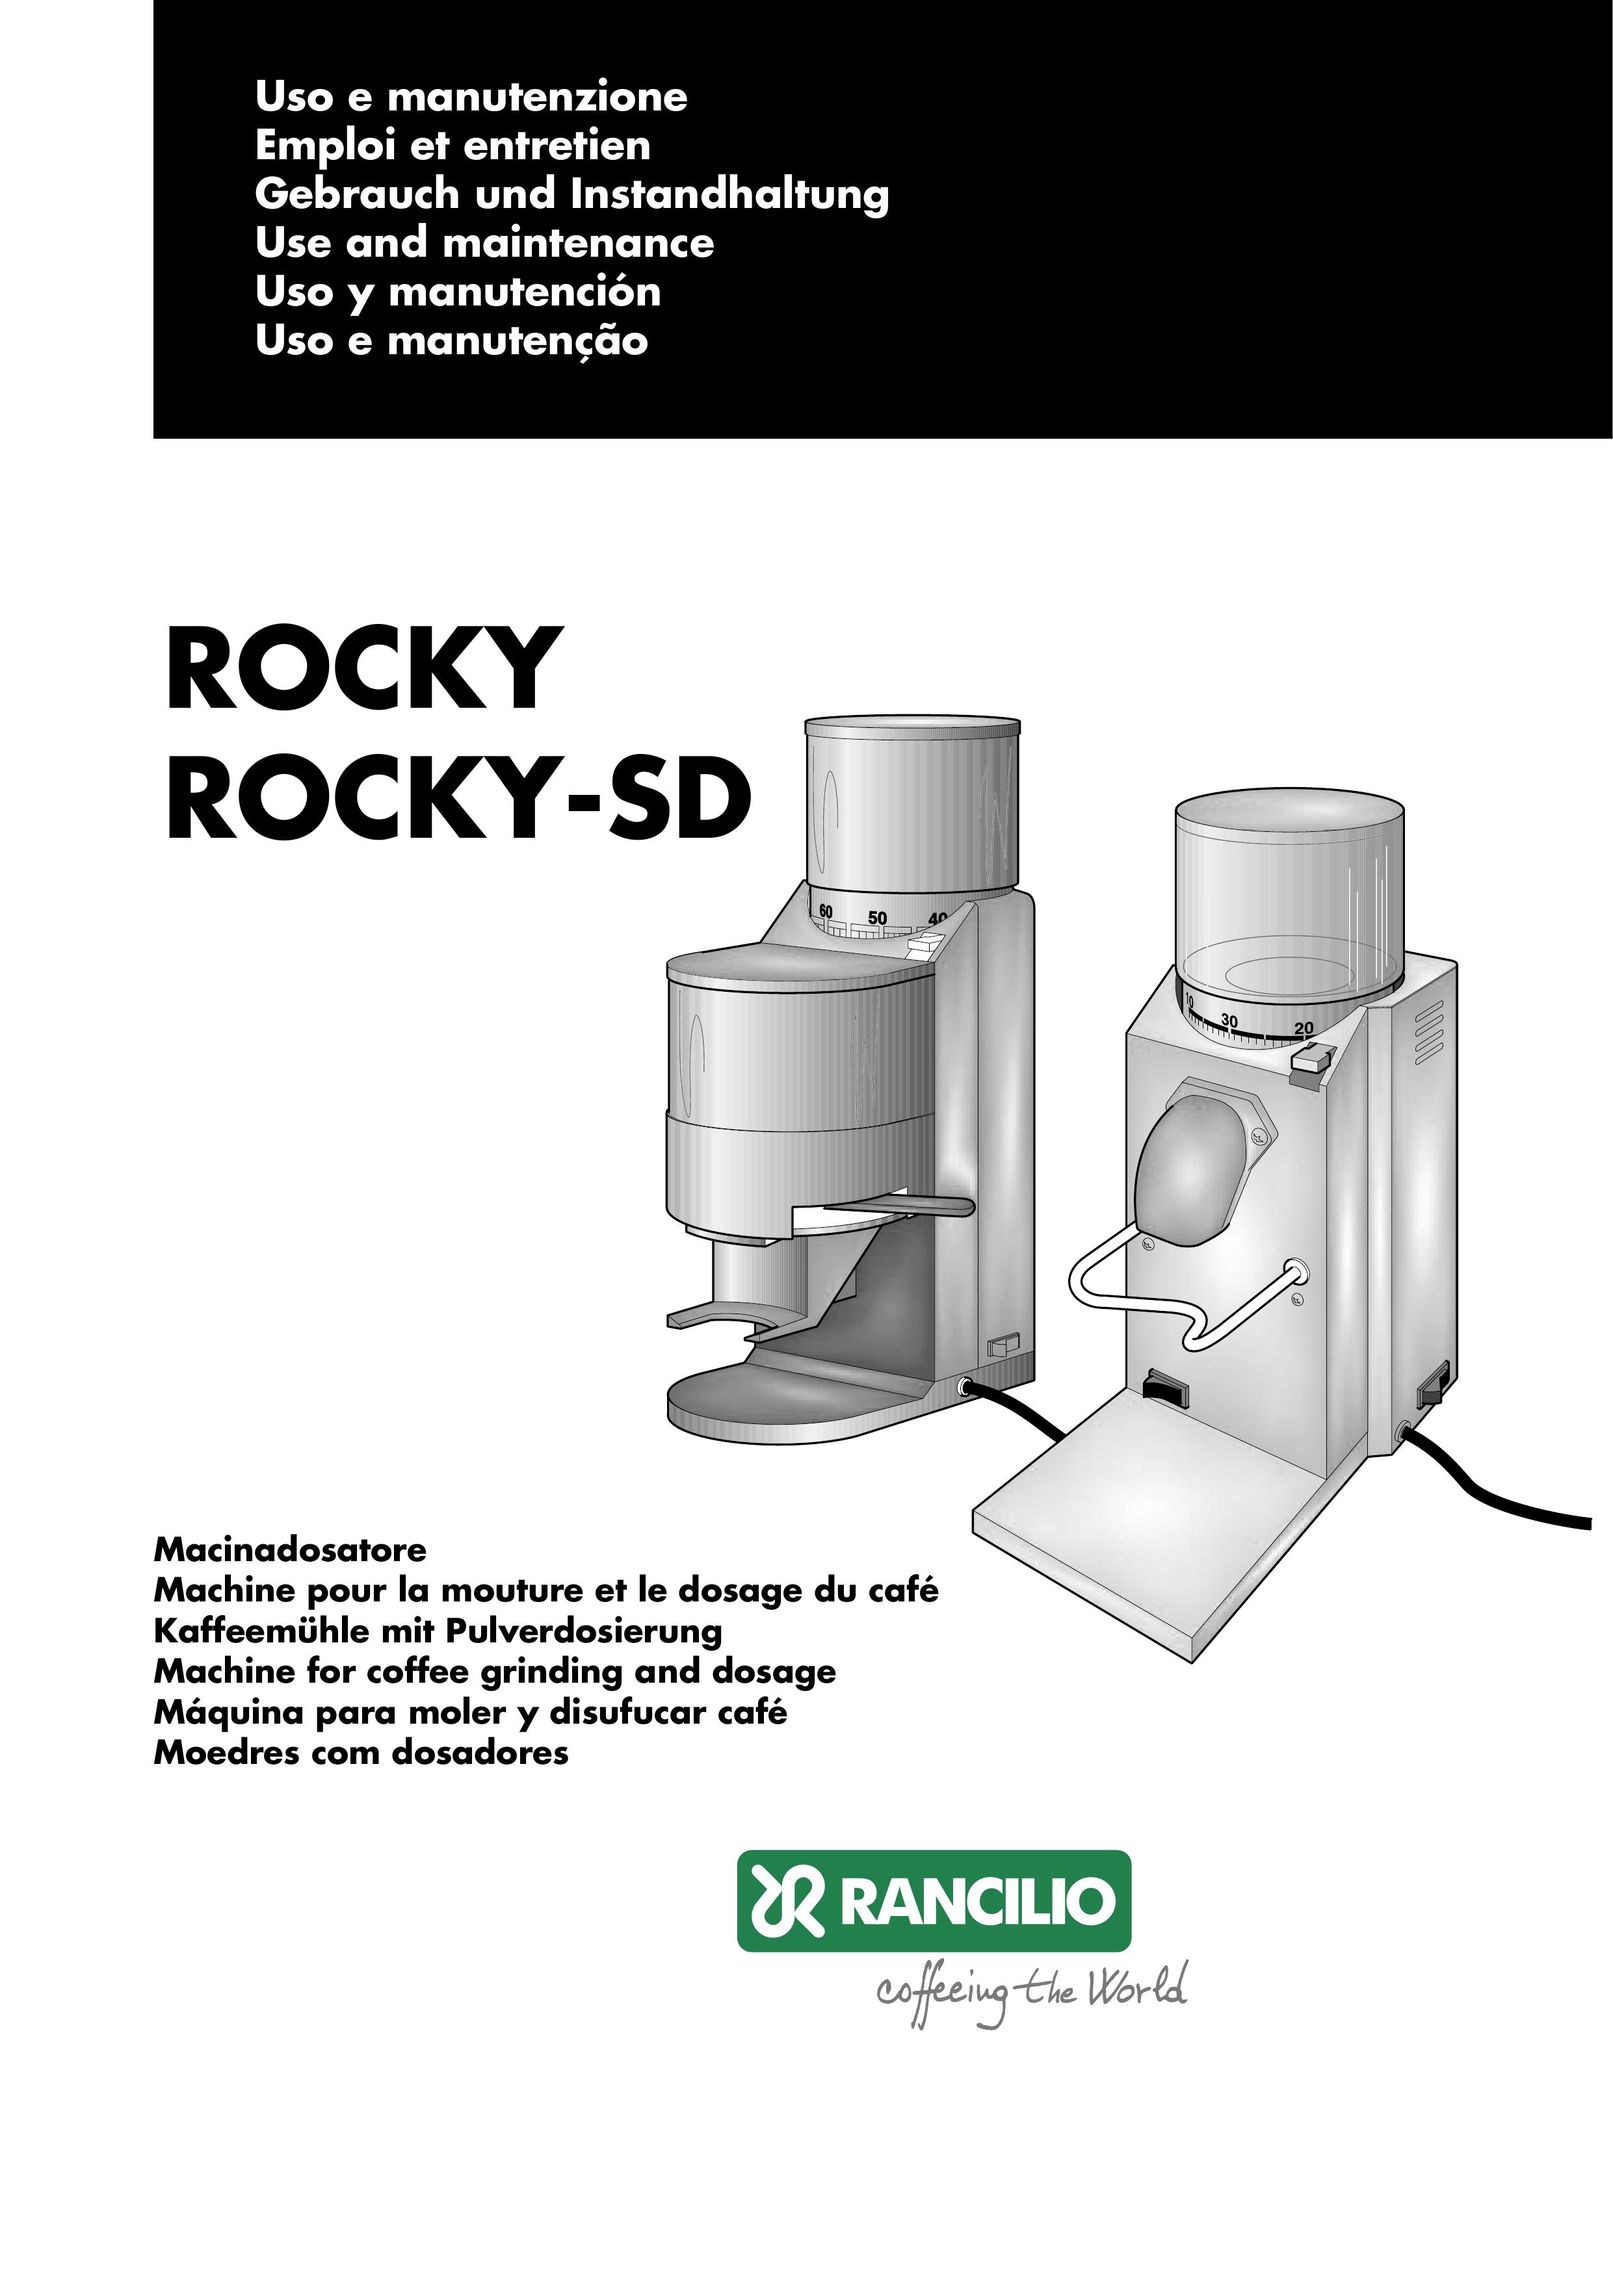 Rancilio ROCKY-SD Coffee Grinder User Manual